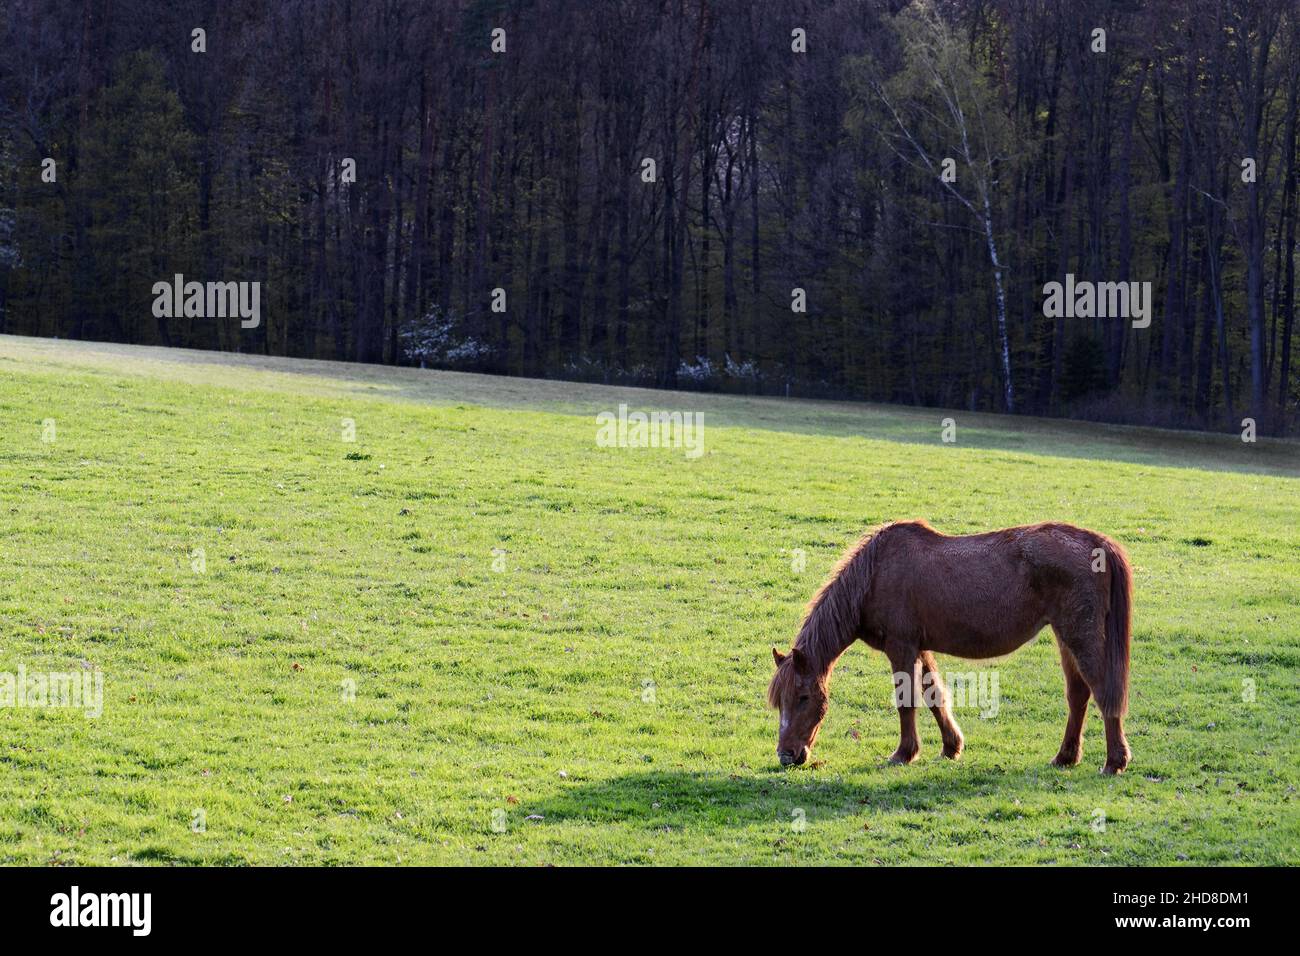 Le cheval - Equus ferus cabalus, grand animal domestique populaire sur les pâturages, Zlin, République Tchèque. Banque D'Images